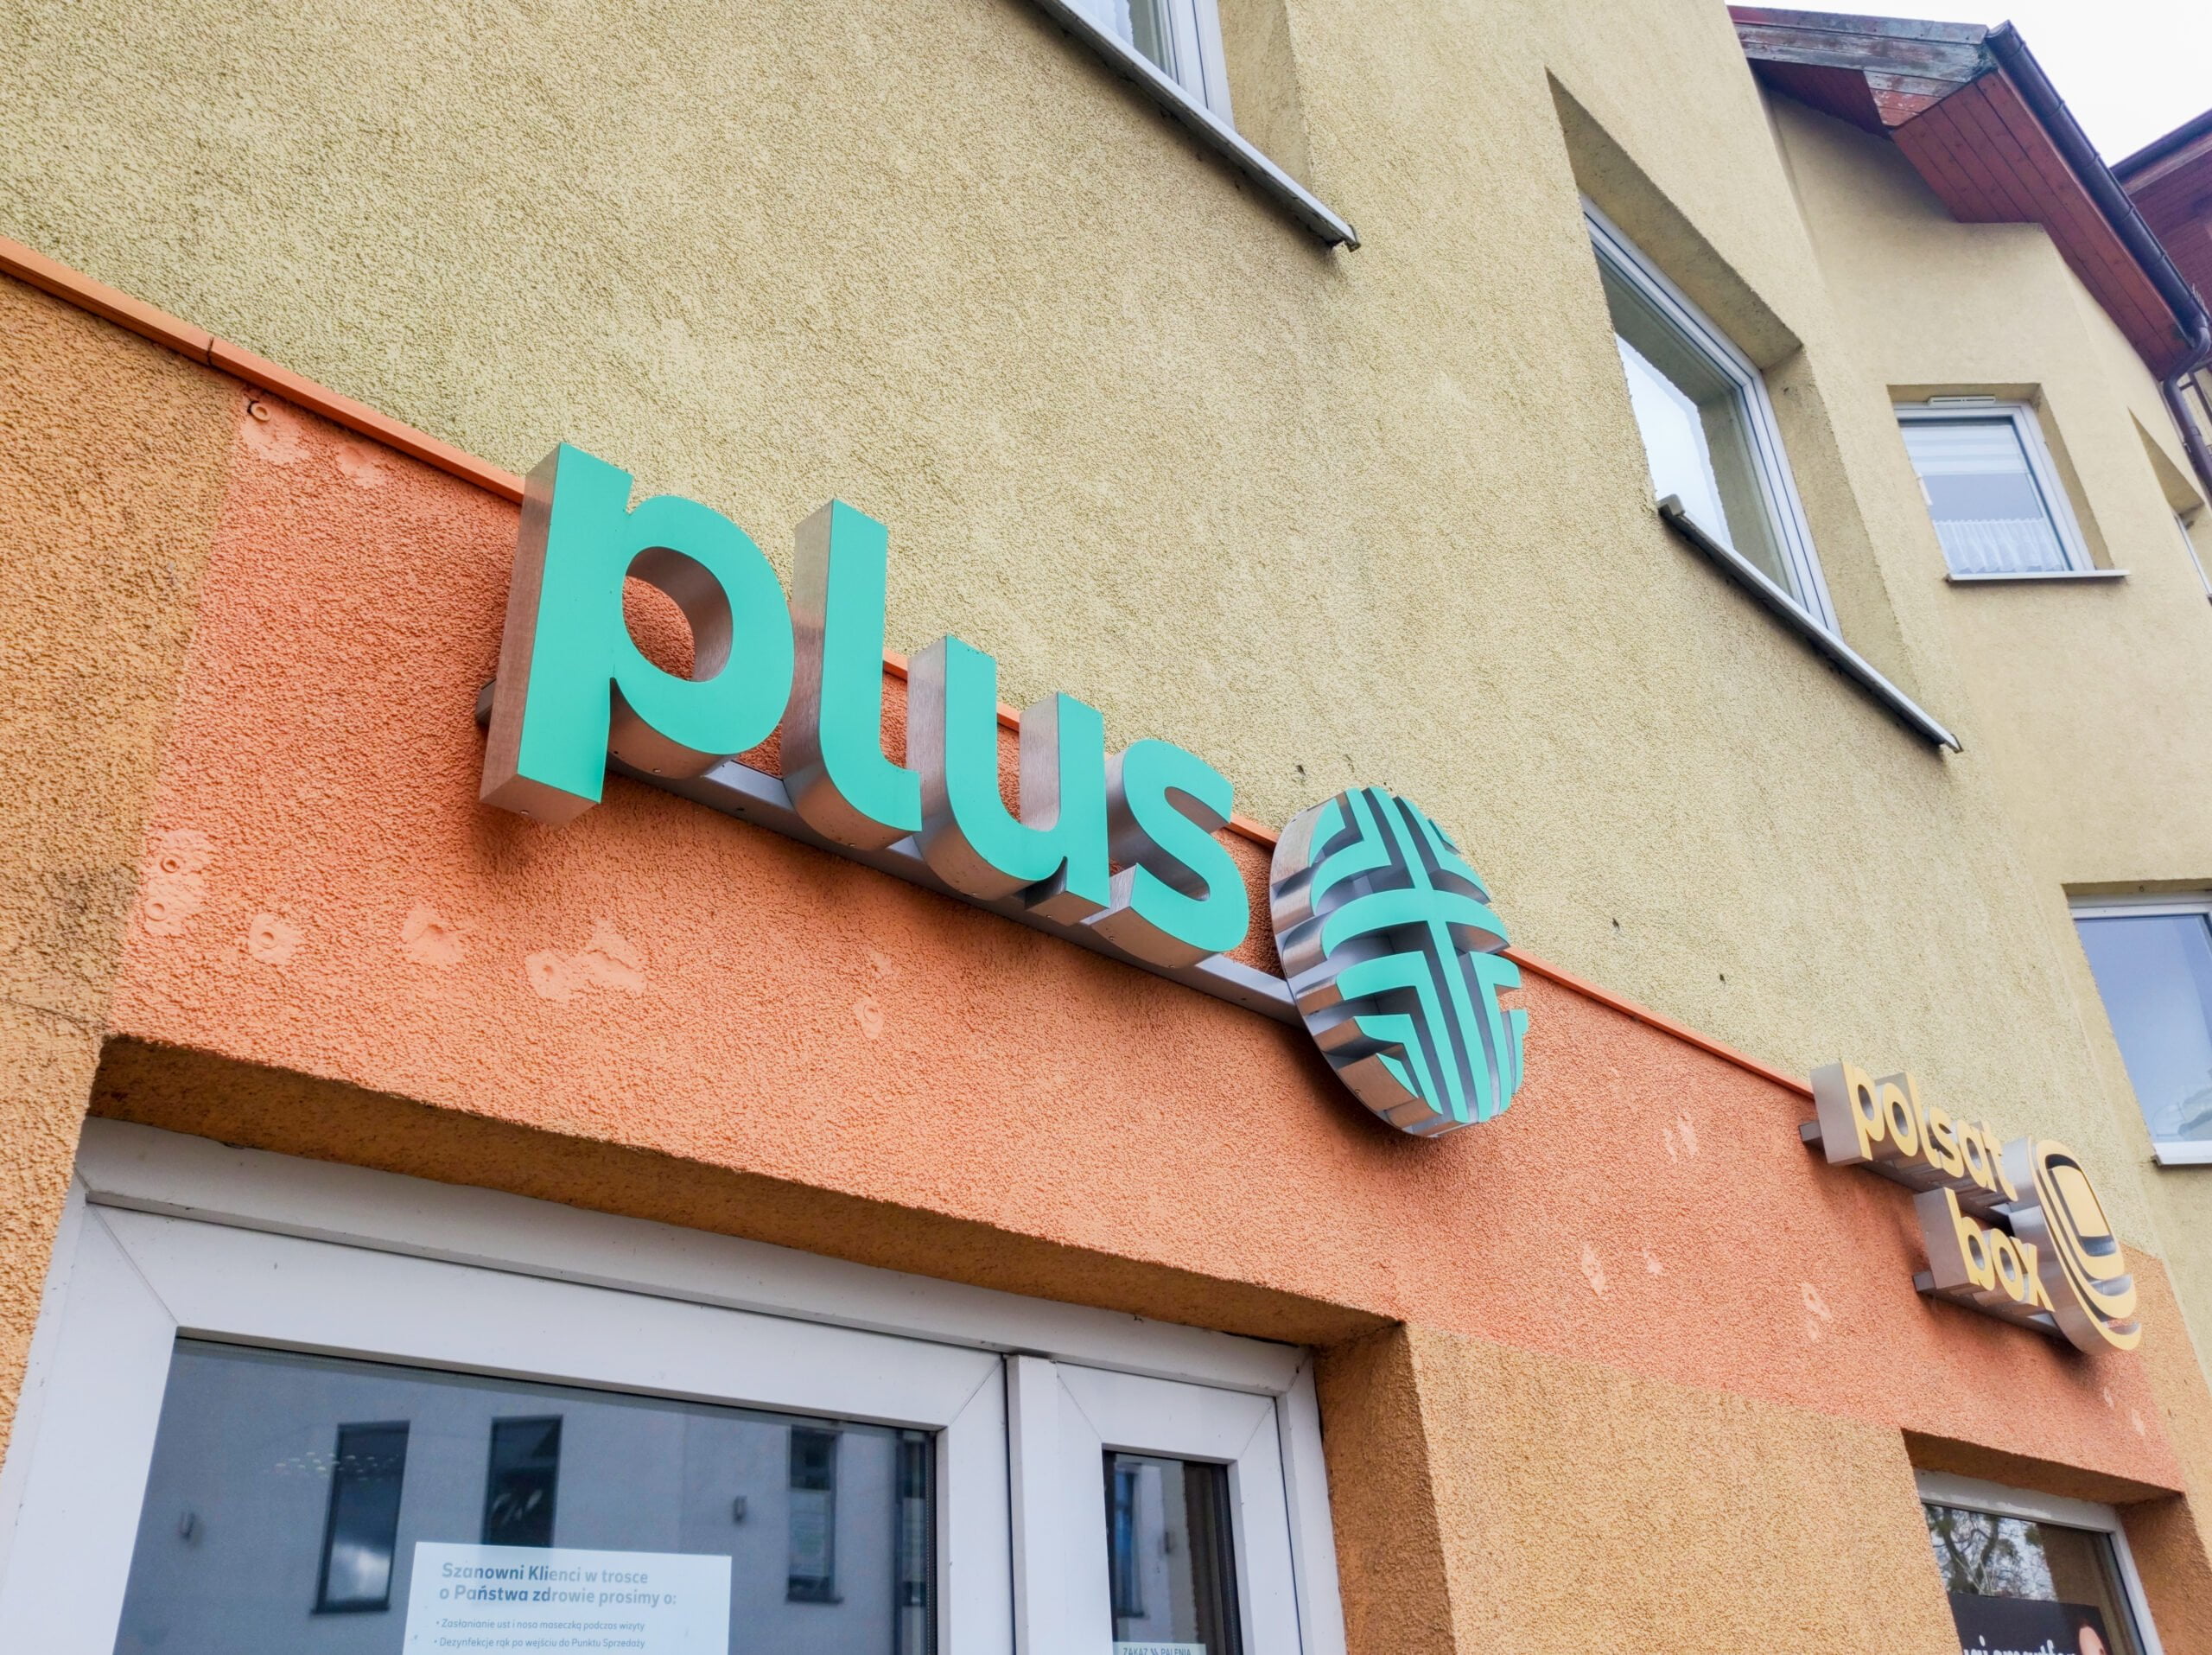 Napis na elewacji budynku z logo "Plus" i napisem "Poczta Polska" w słoneczny dzień.